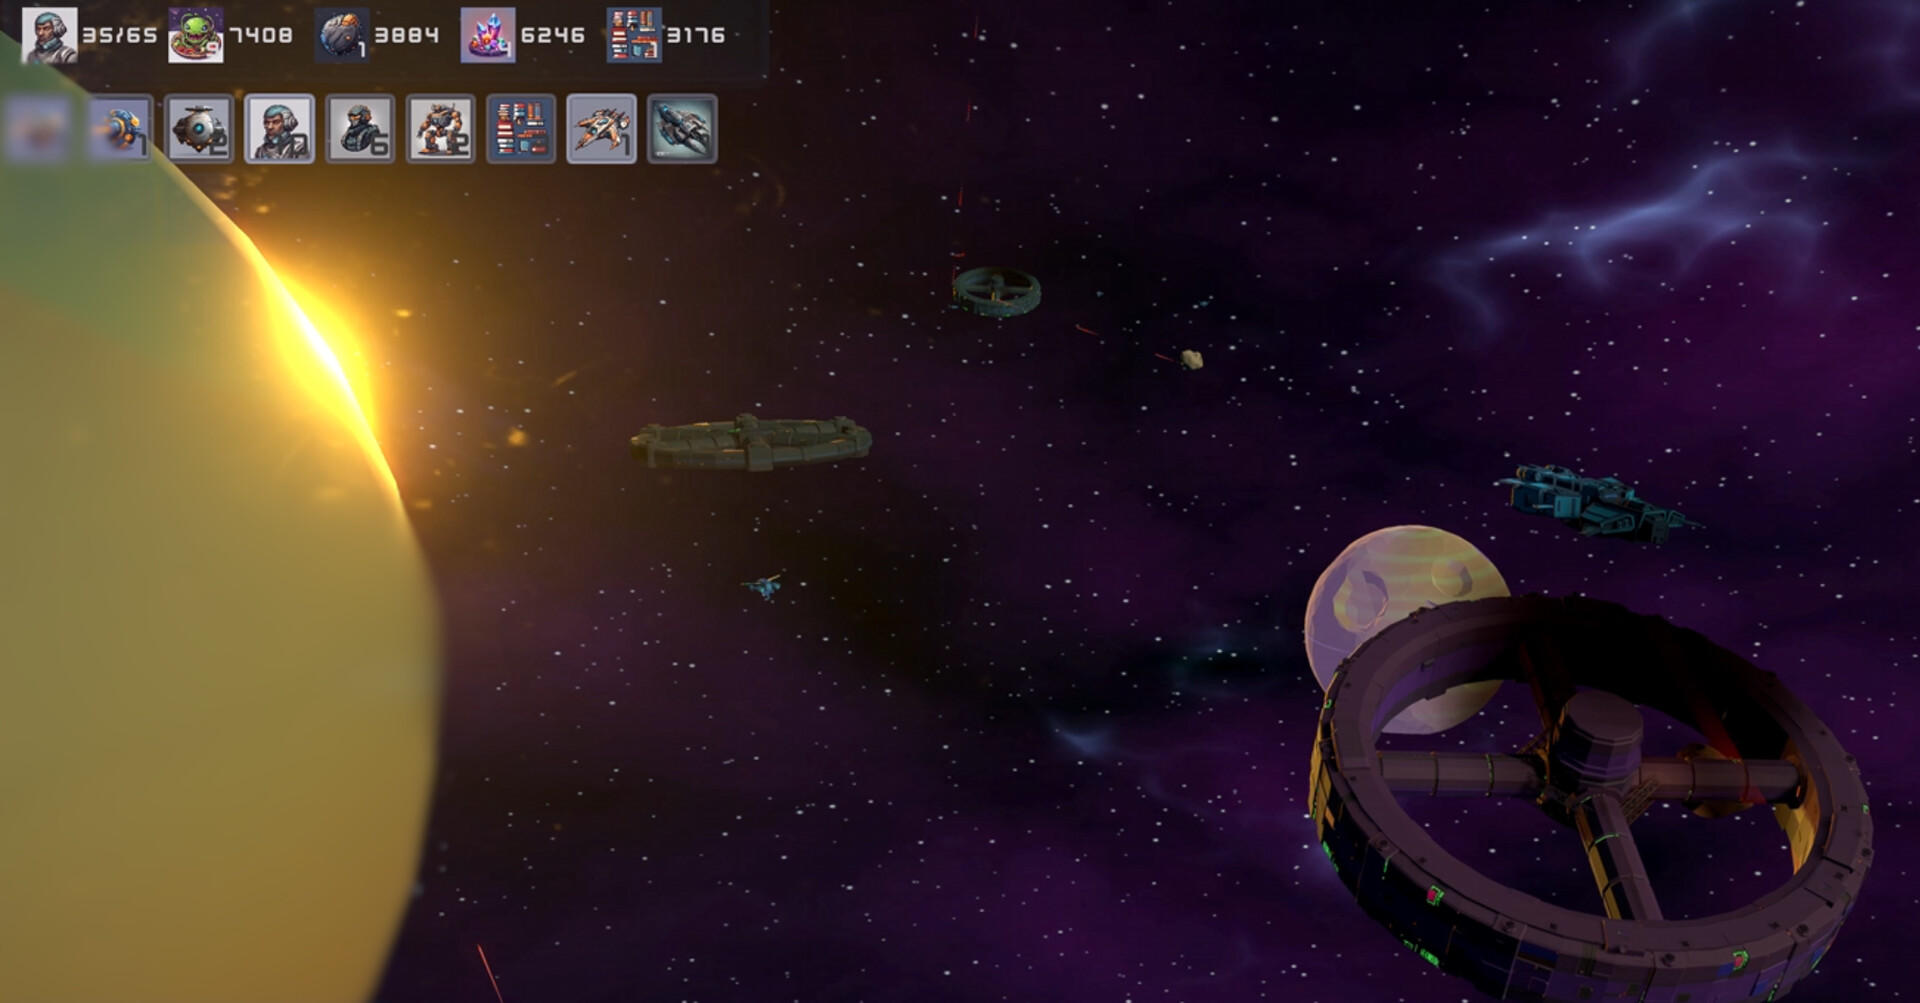 Screenshot 1 of Reinos solares: supervivencia humana 